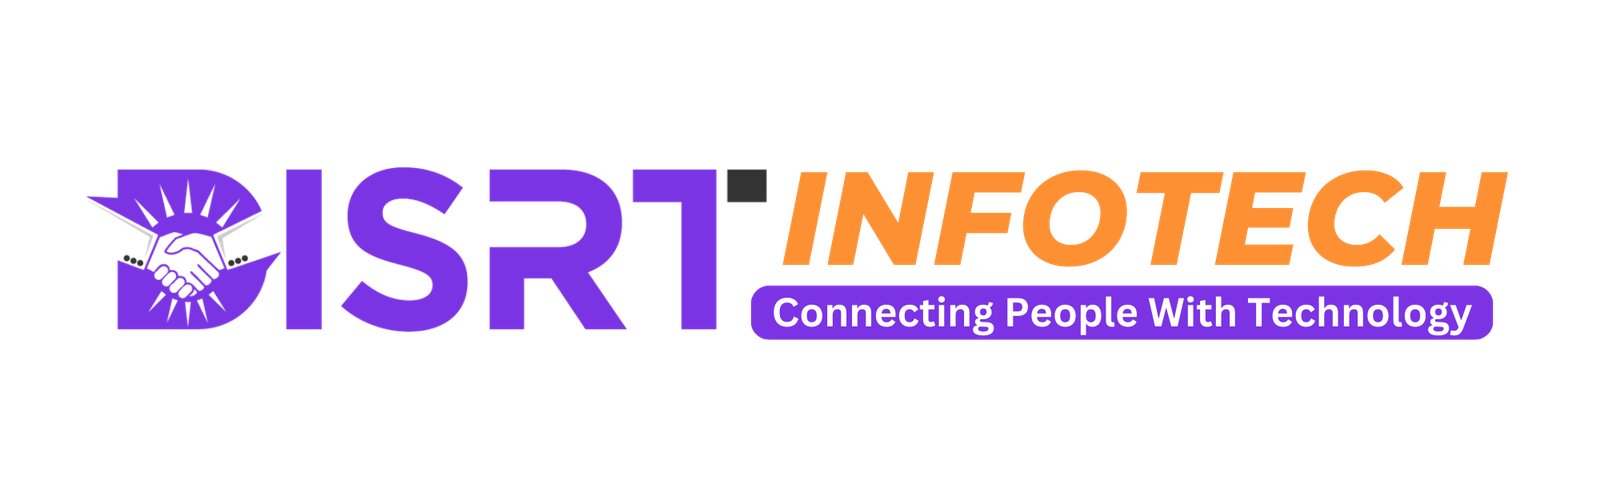 Disrt-Infoech-Logo